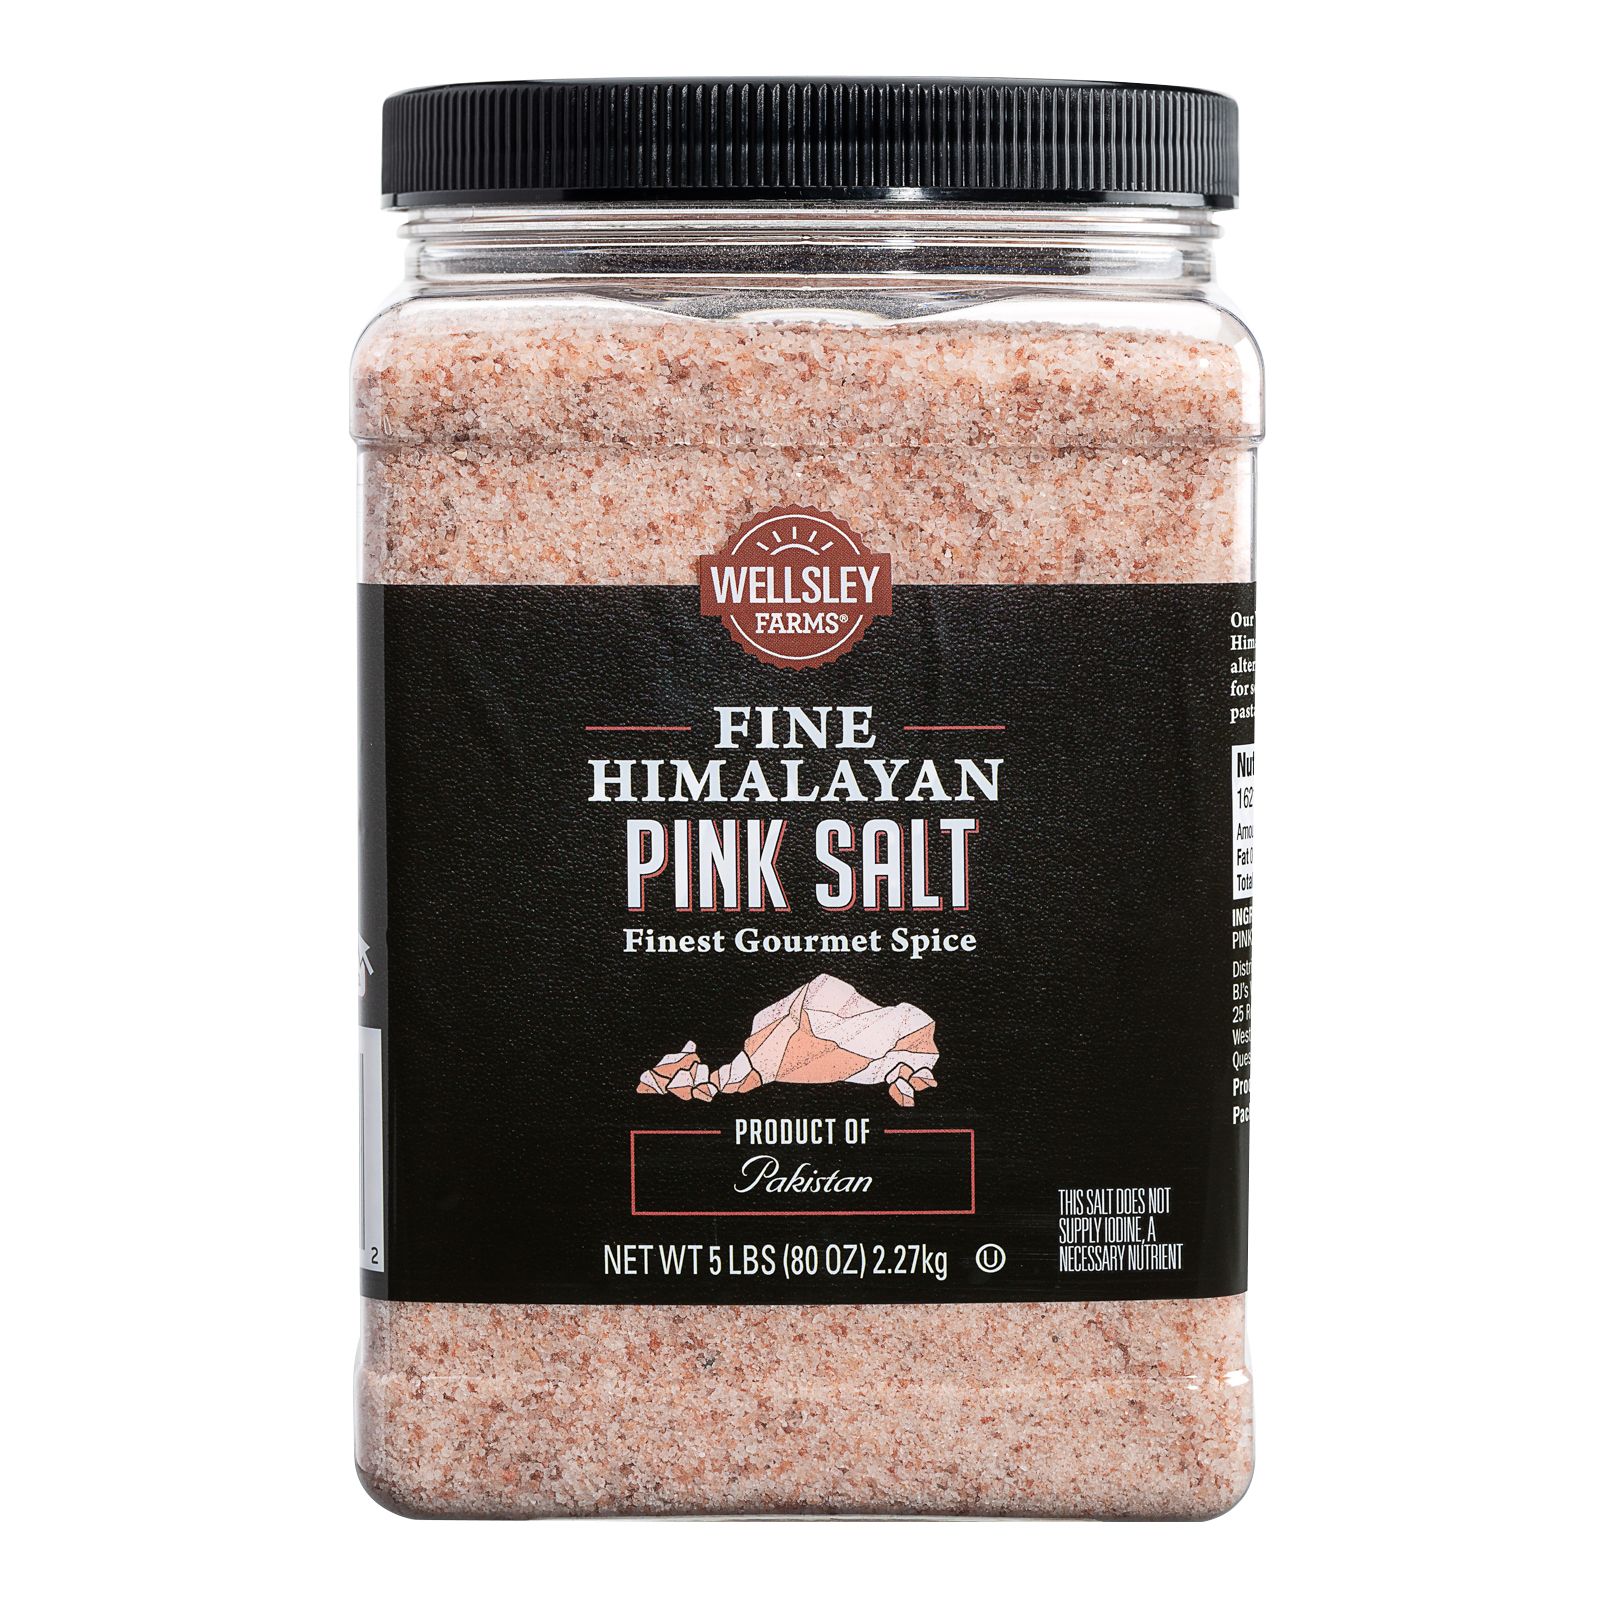 Himalayan Chef Himalayan Pink Salt & Black Pepper, Refillable